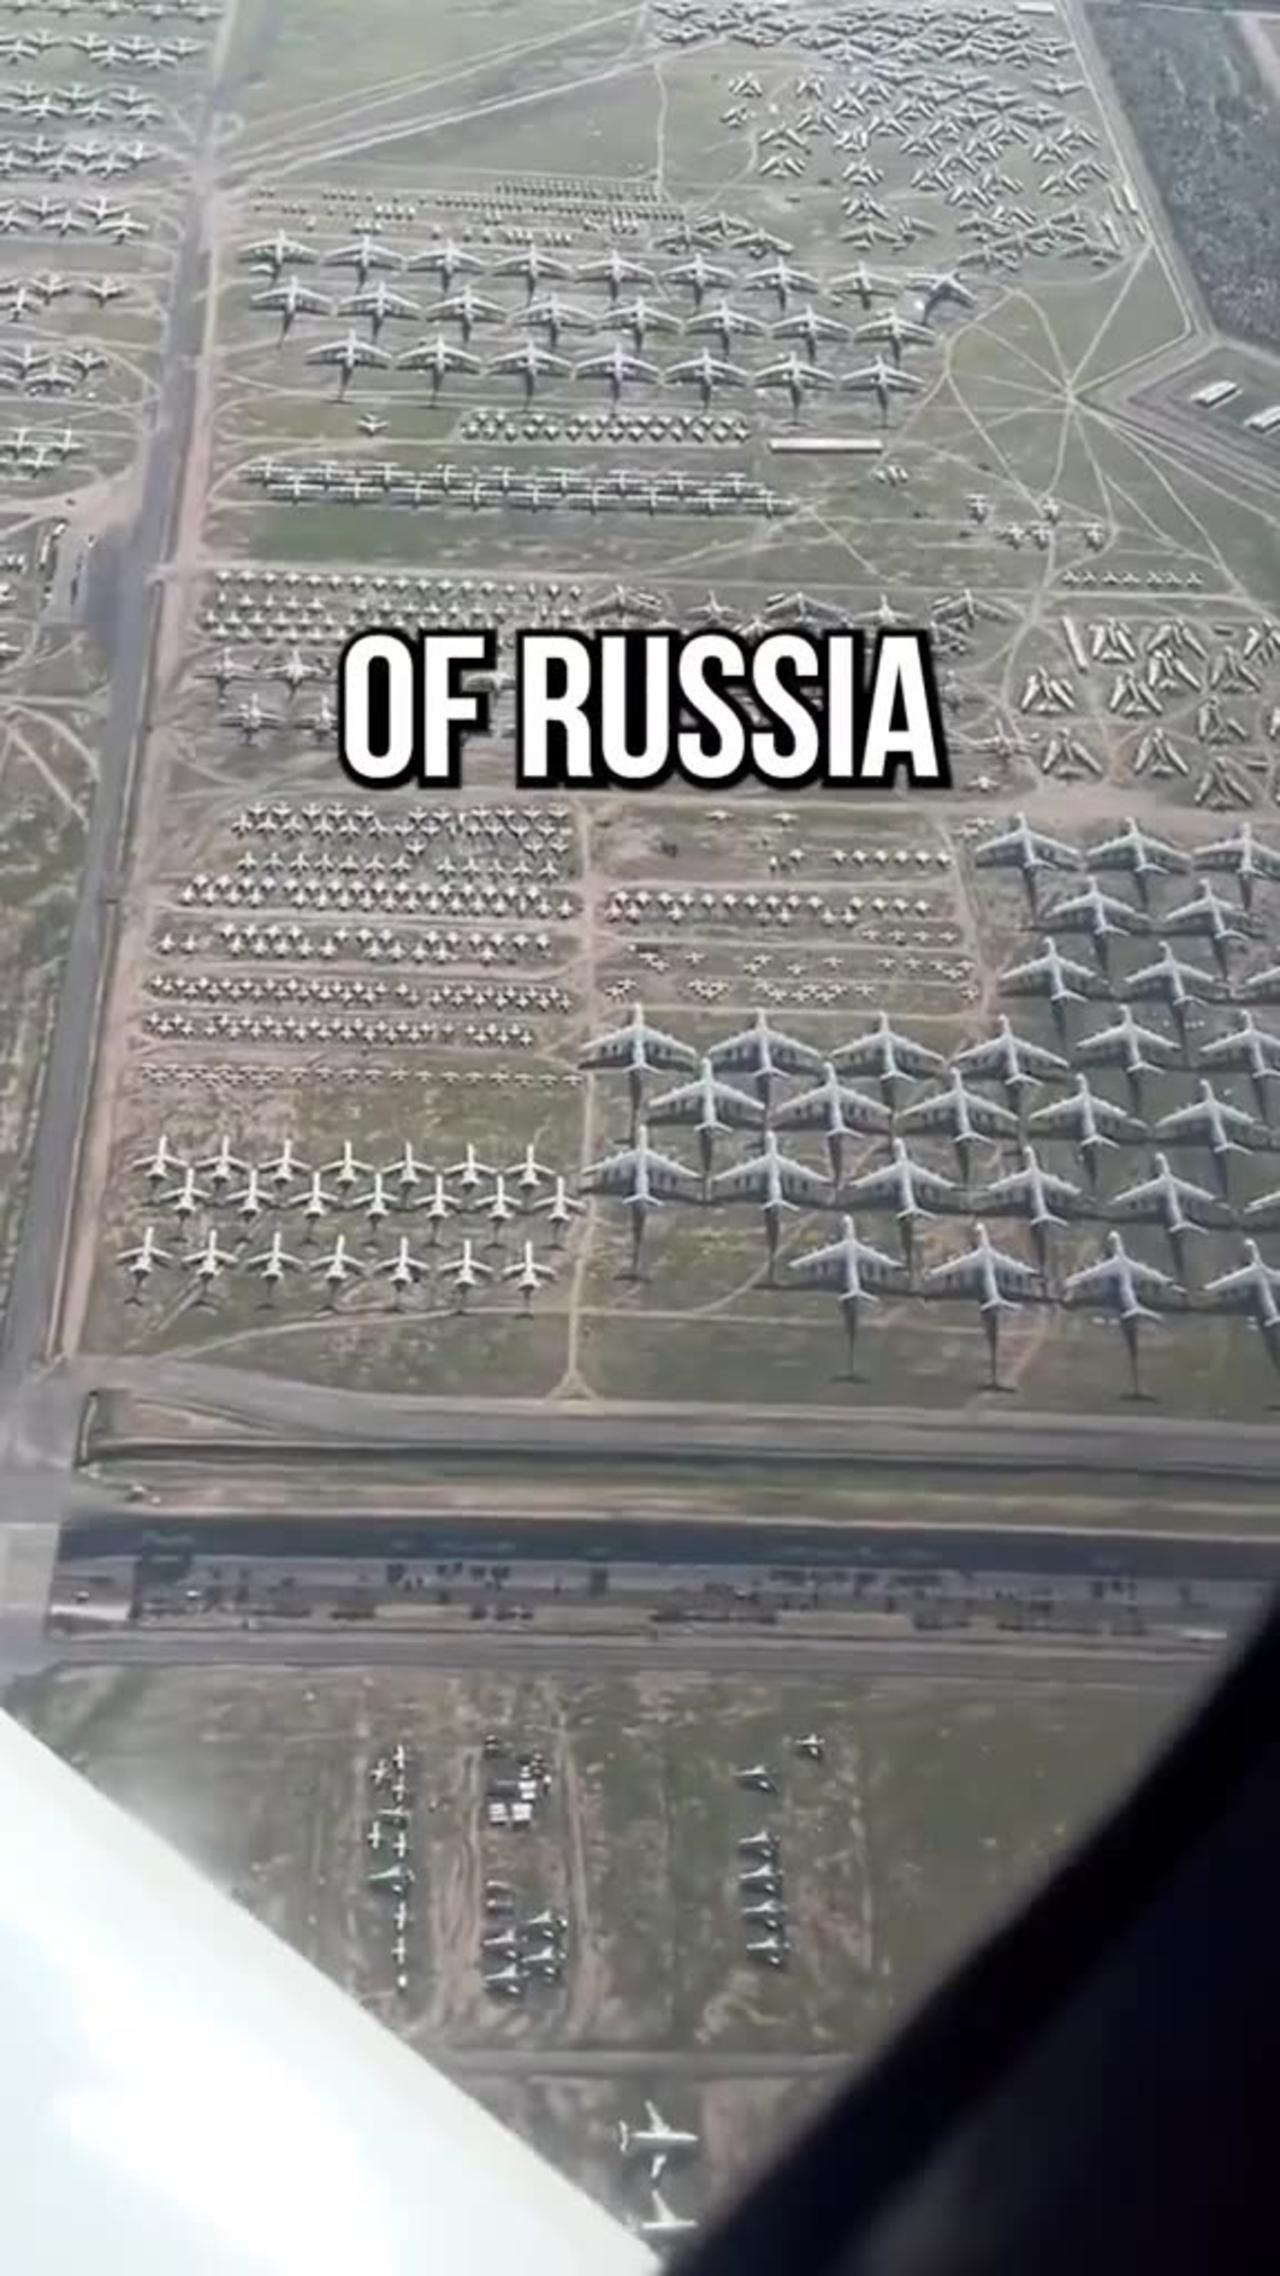 War Russia vs Ukraine